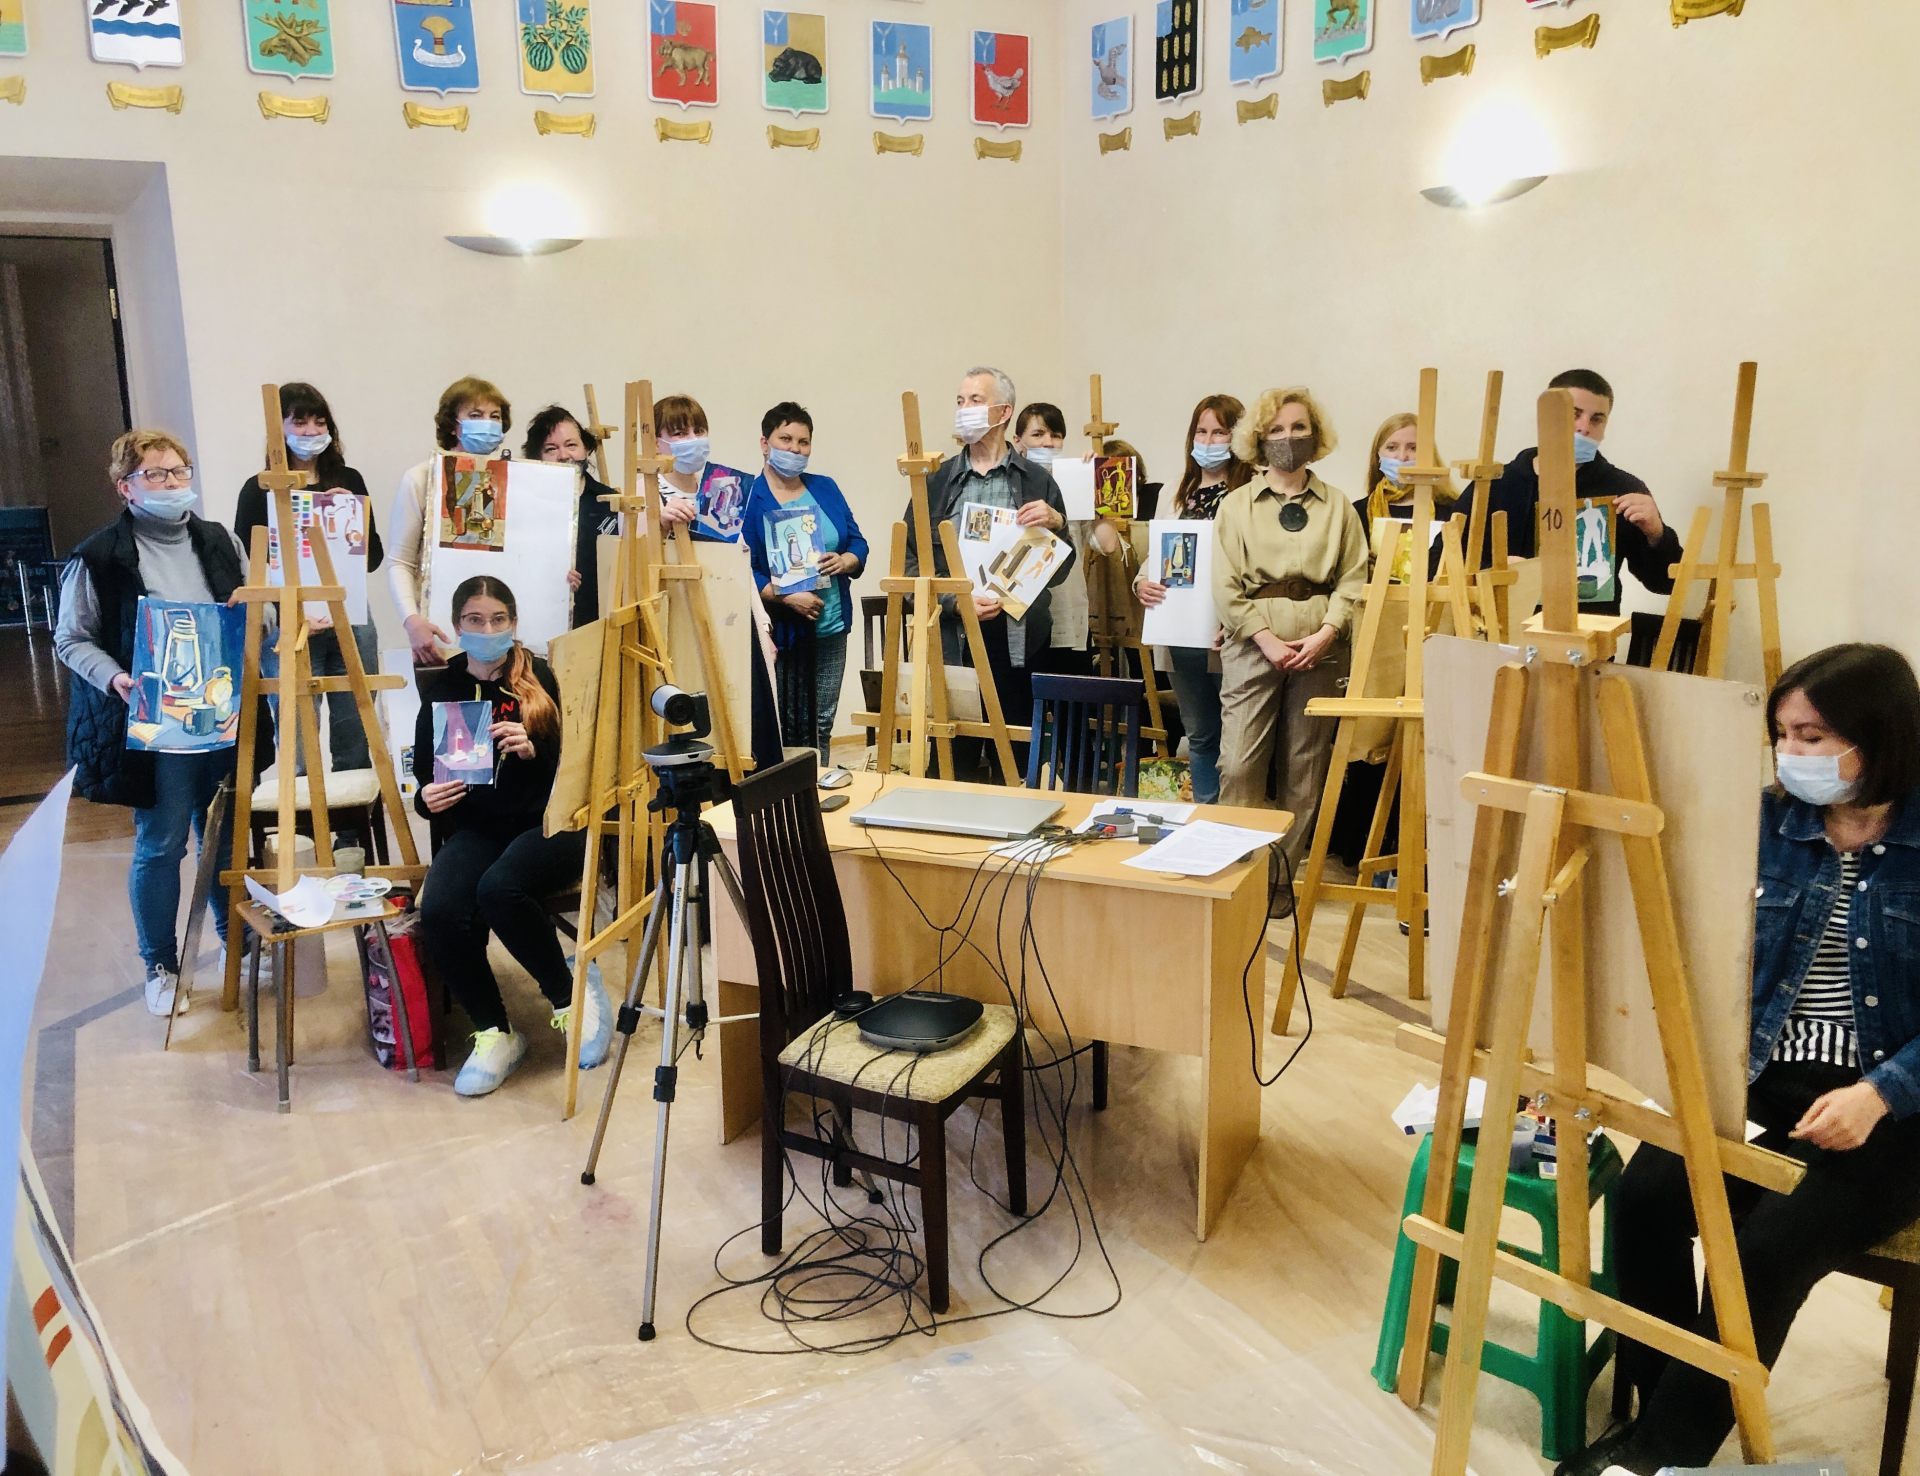 13 и 14 мая в Саратовском областном учебно-методическом центре прошли занятия в рамках программы повышения квалификации «Современные методики преподавания живописи, рисунка, композиции при обучении изобразительному искусству в образовательных организациях